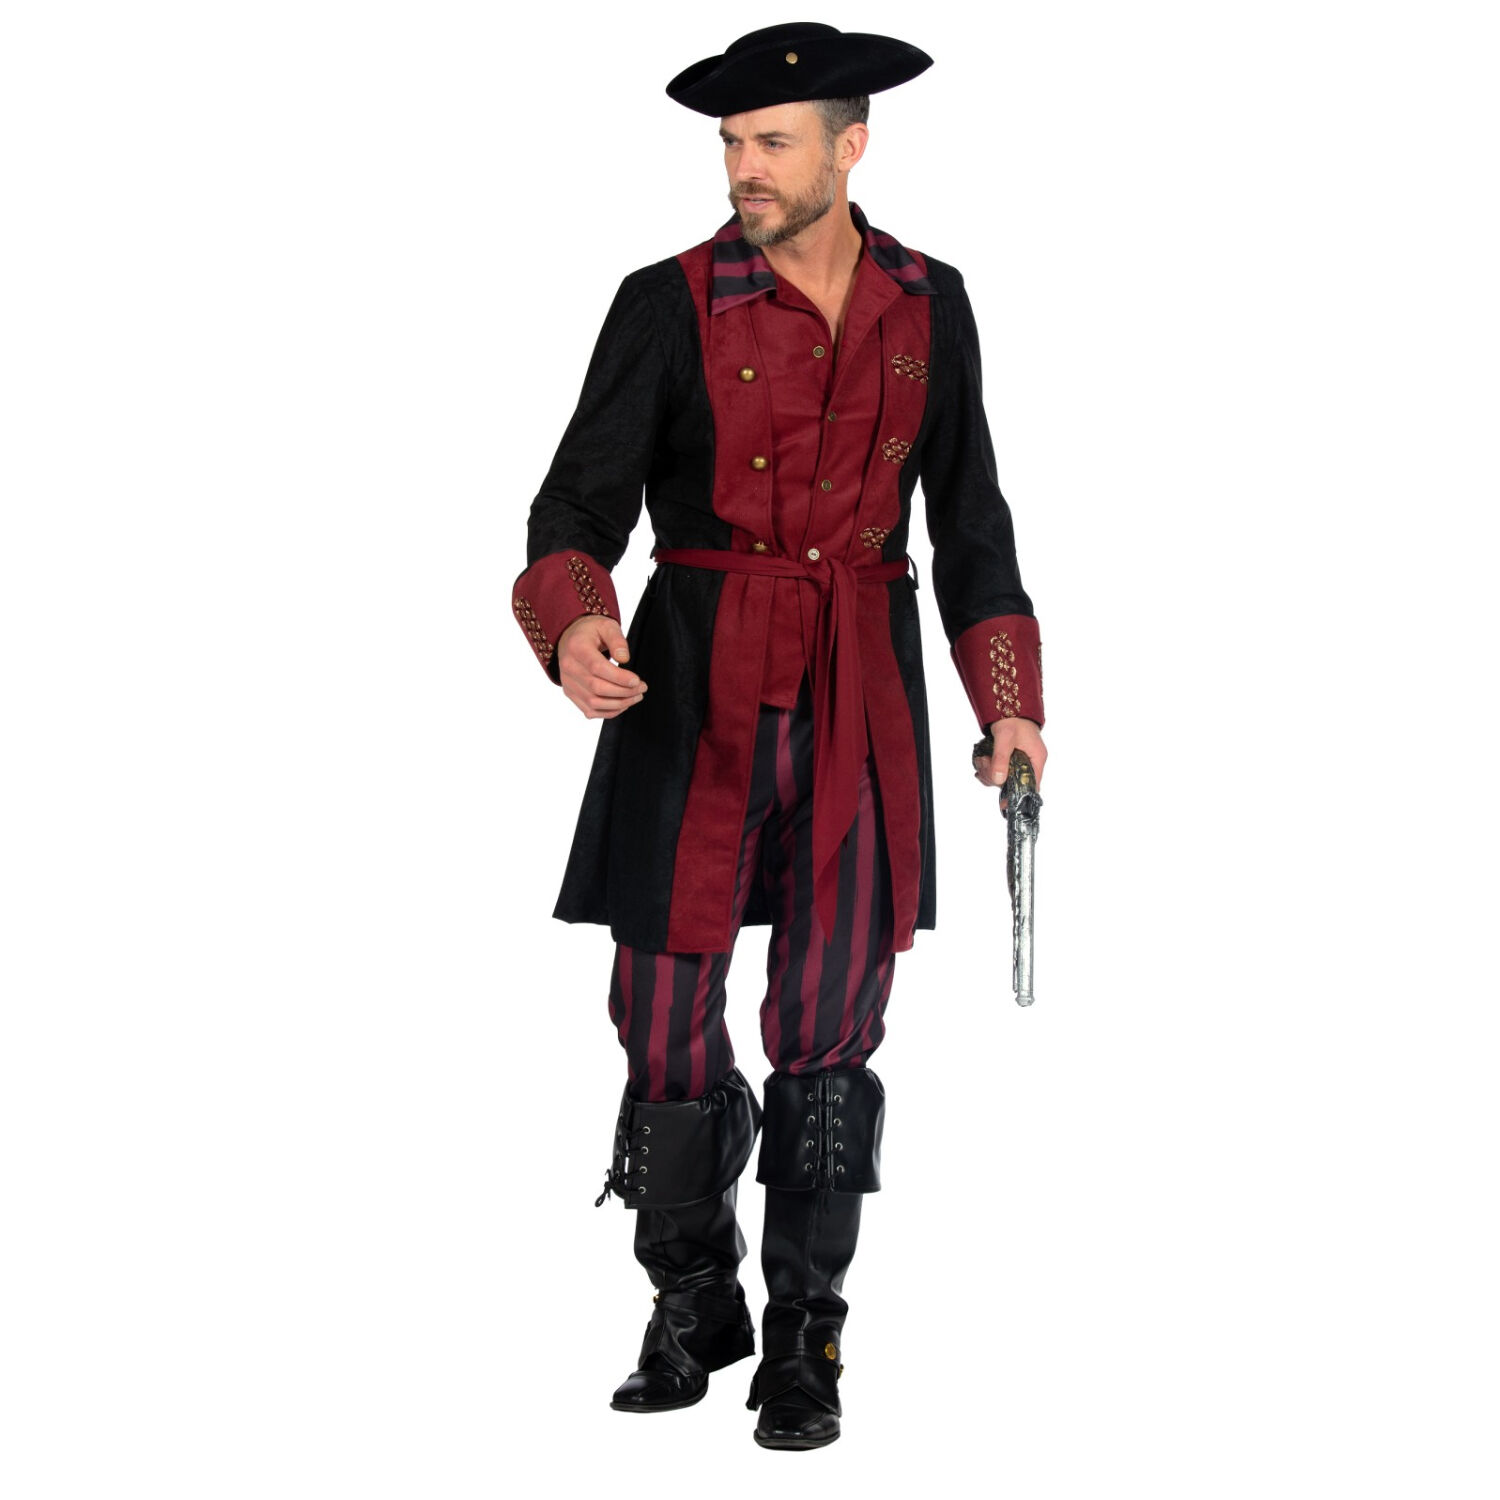 NEU Herren-Kostüm Pirat, burgund-schwarz, Gr. S